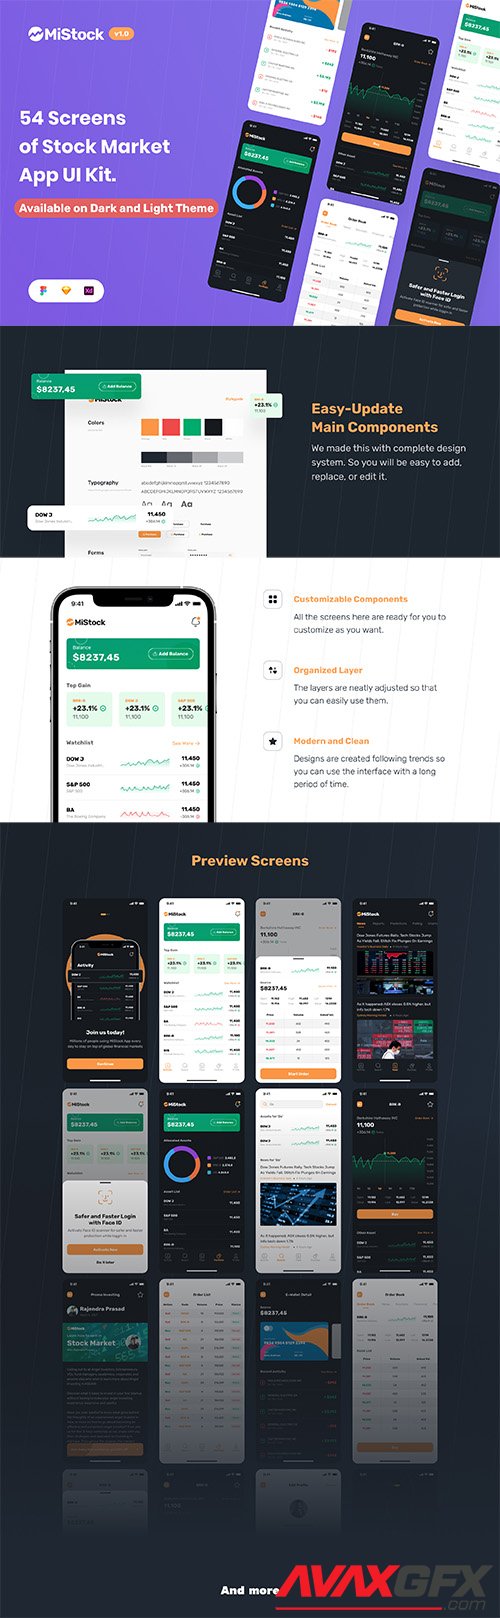 MiStock - Stock Market and Finance App UI Kit